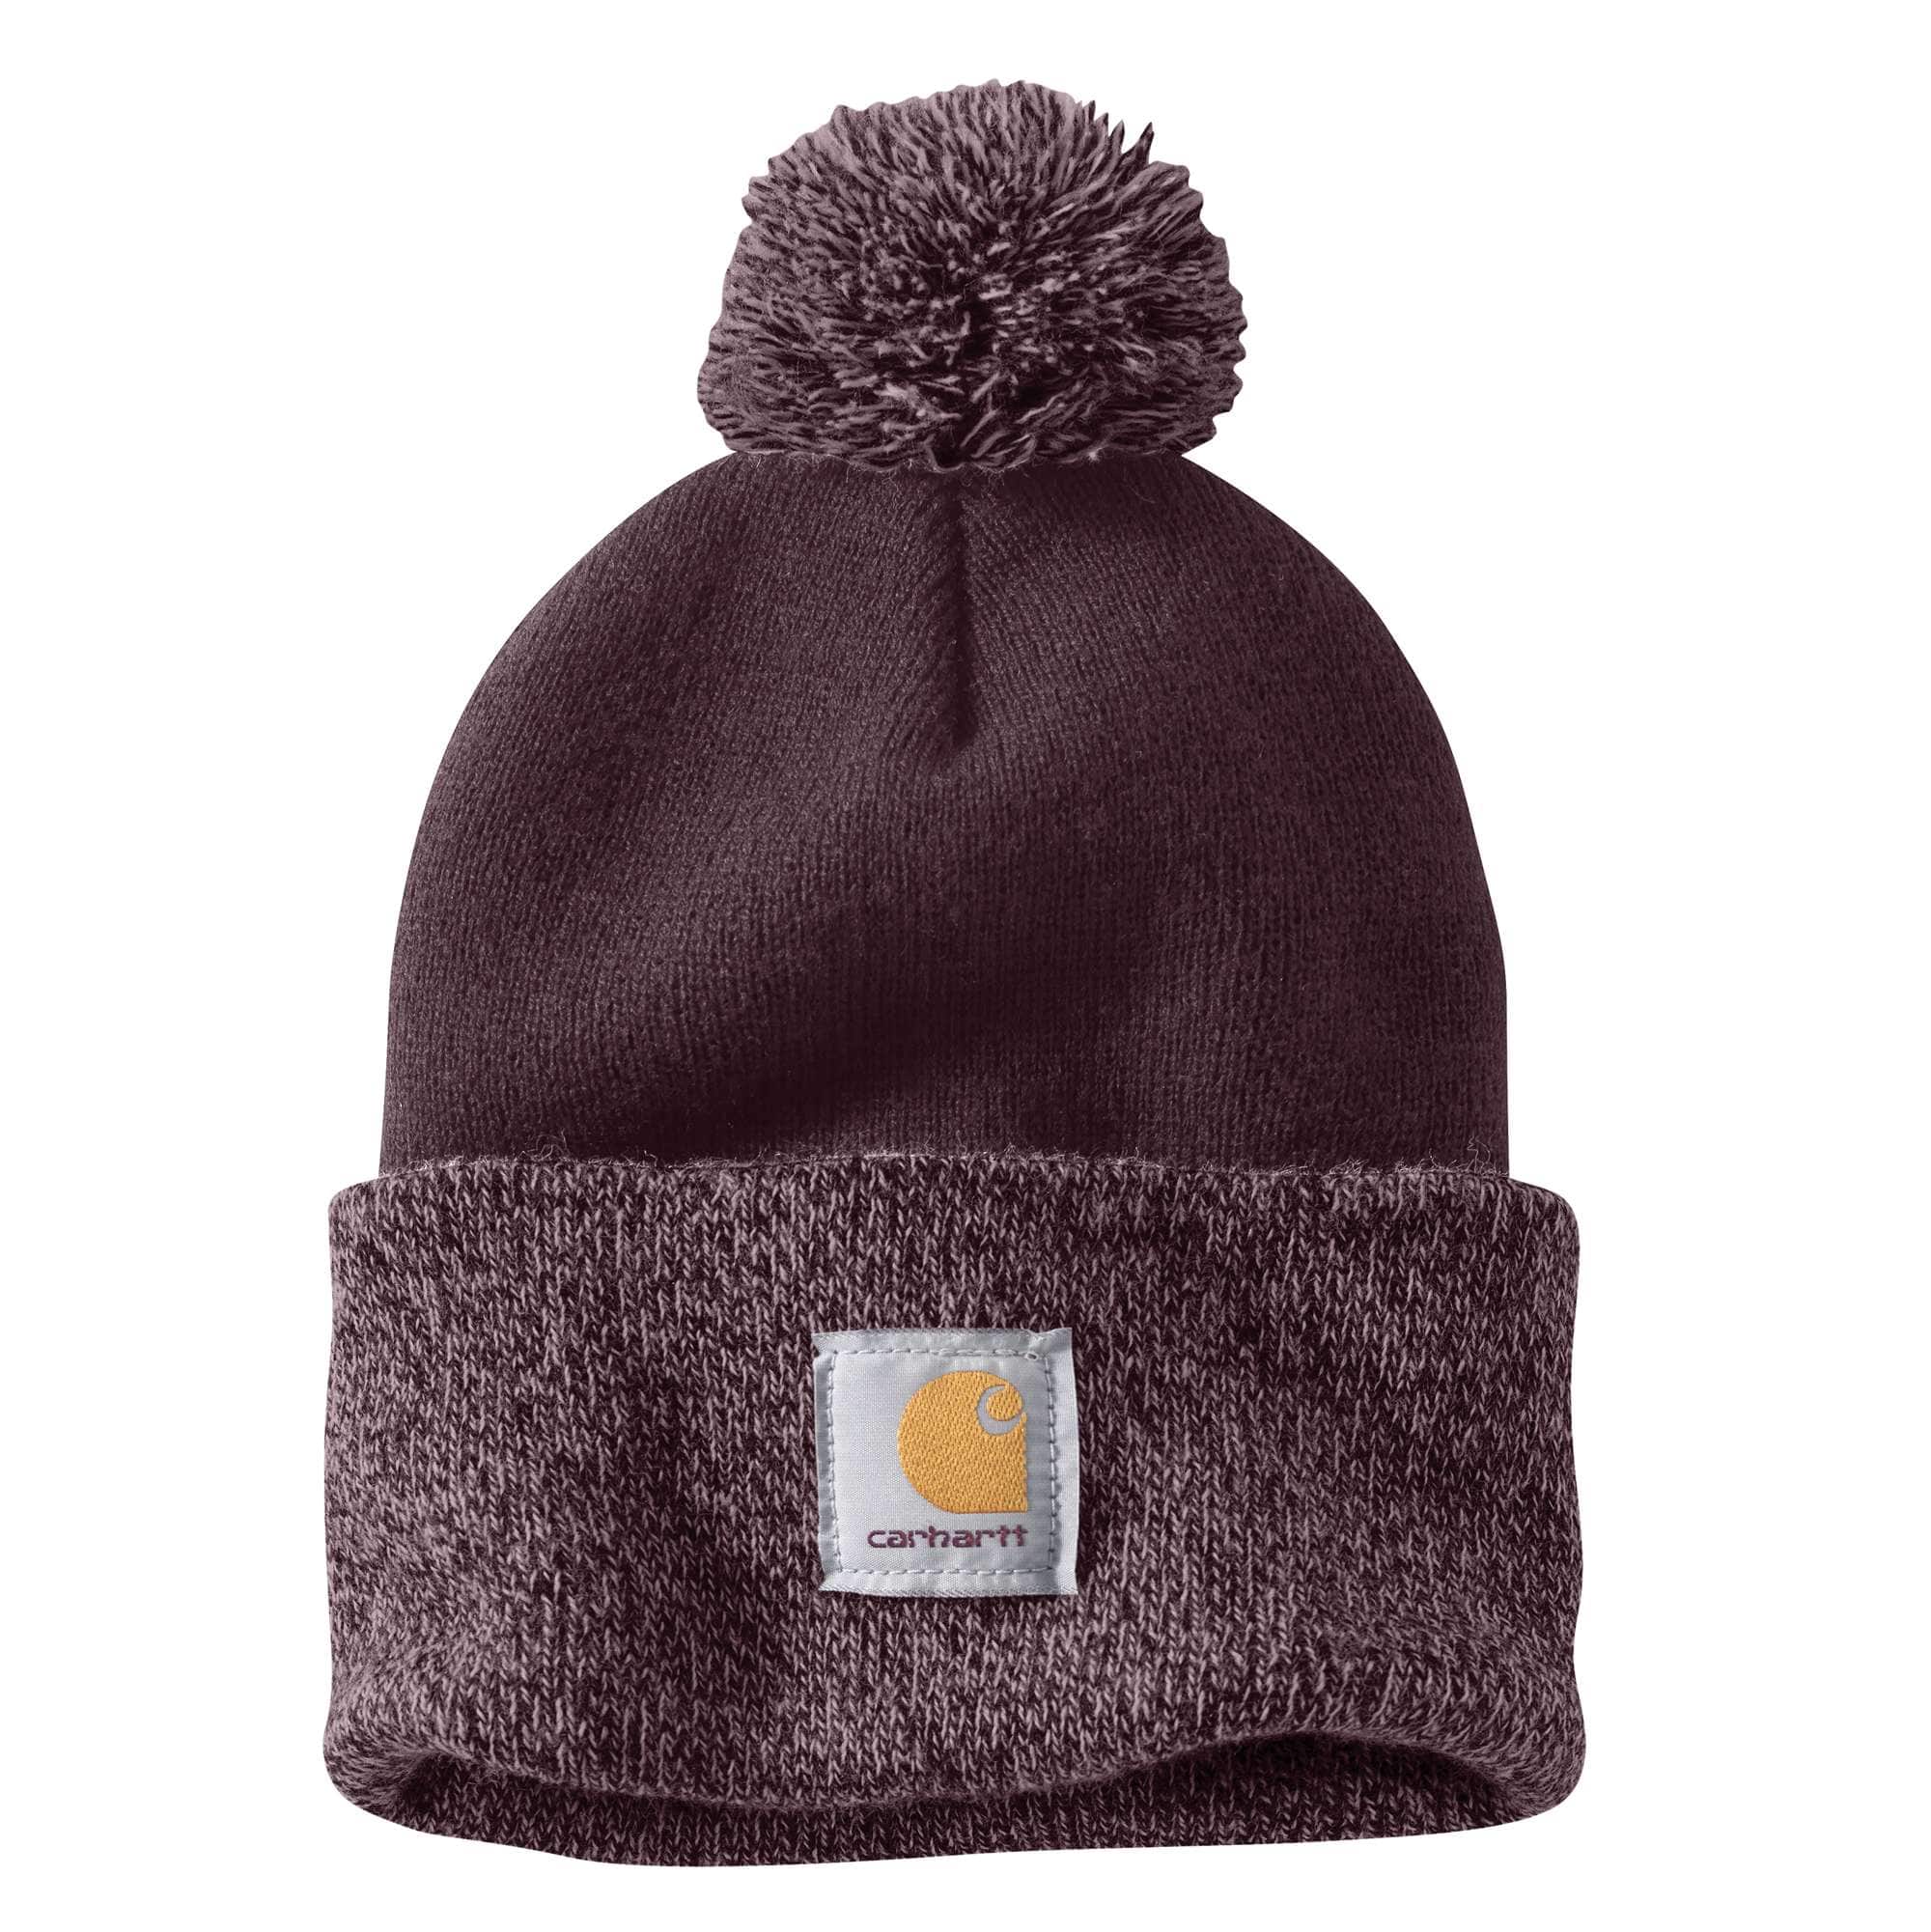 Knit Hats, Beanies, Winter Hats, & Watch Caps | Carhartt